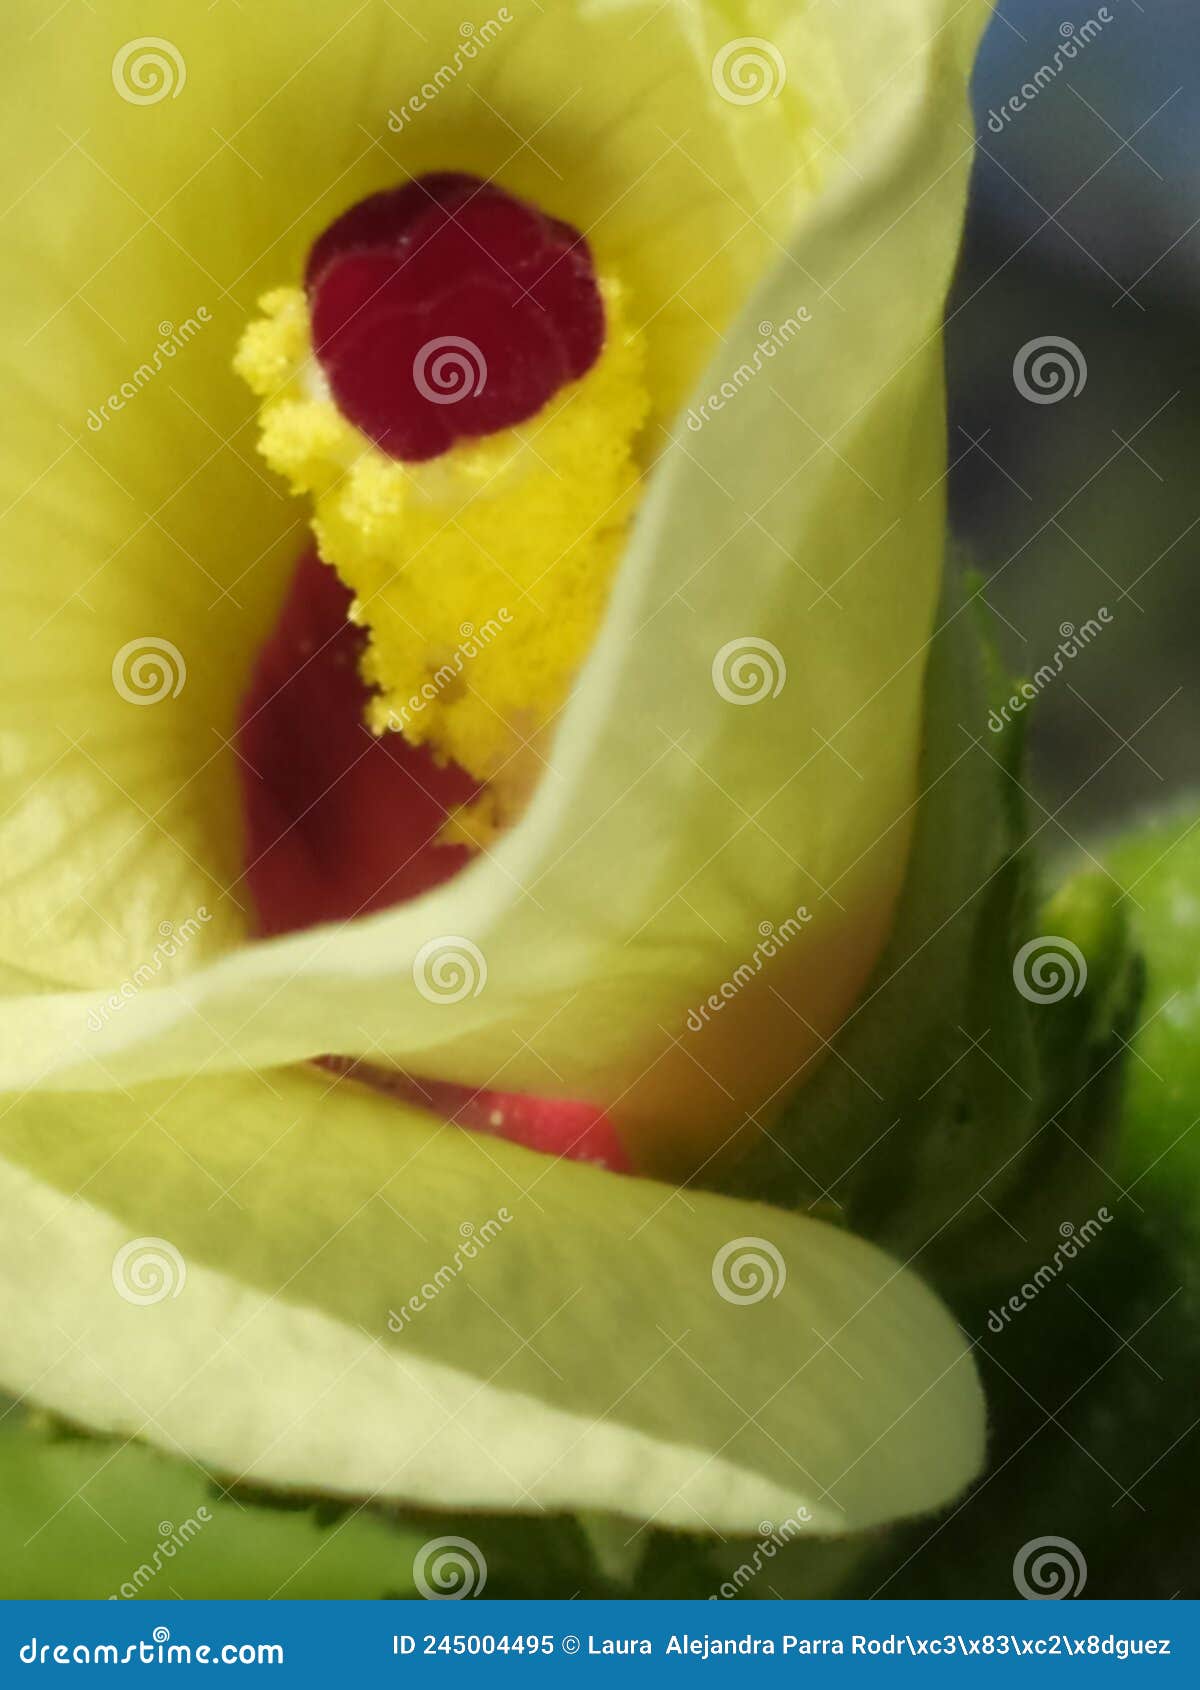 a close up of the interior of a okra flower. detalle del interior de una flor de molondrÃÂ³n